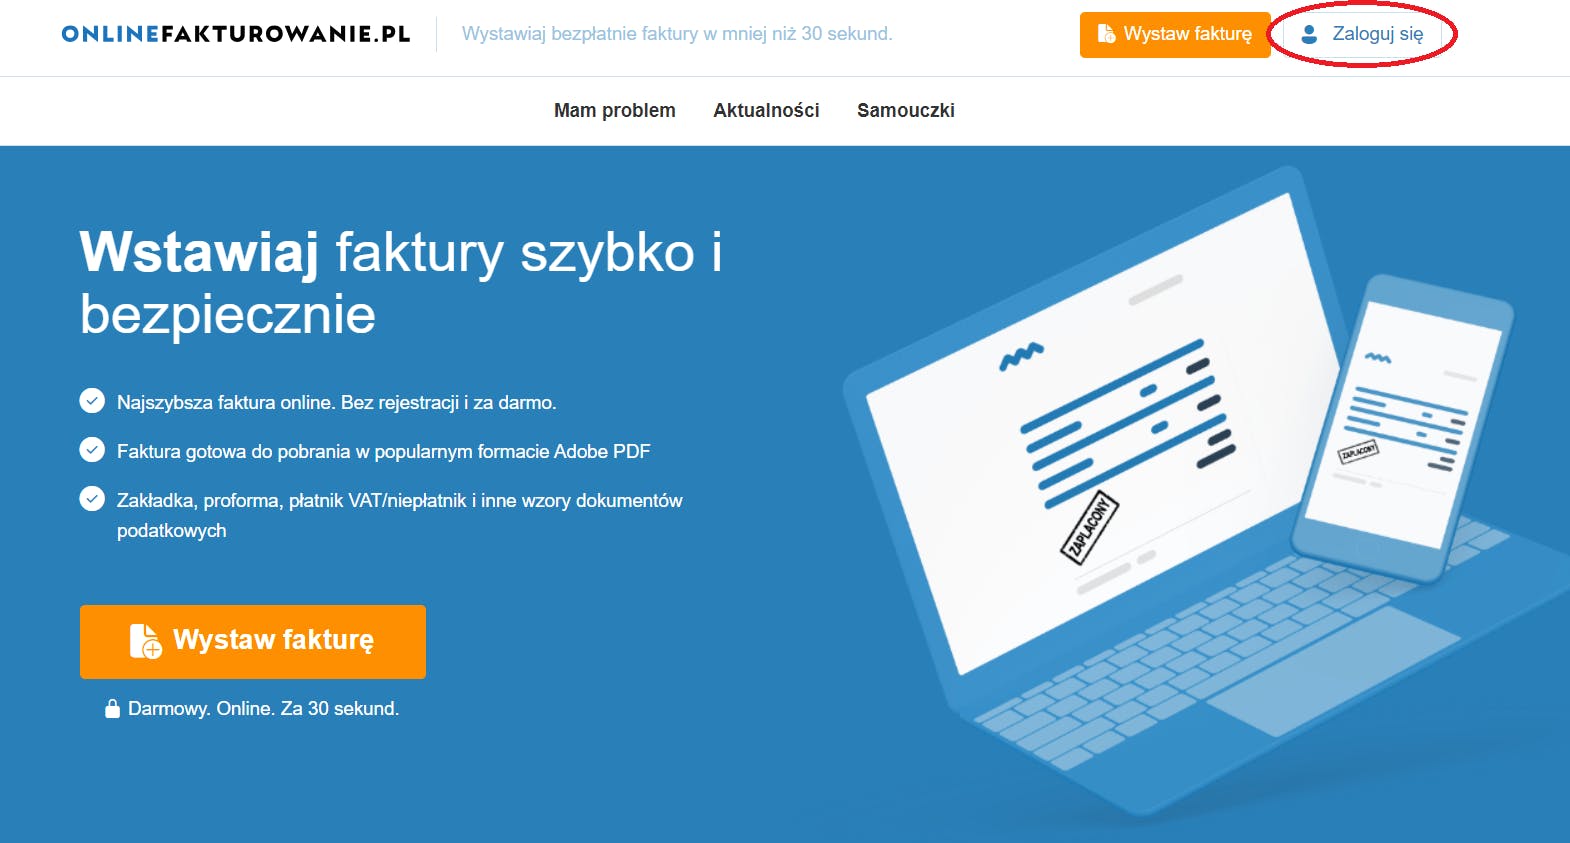 Utworzenie konta w serwisie OnlineFakturowanie.pl